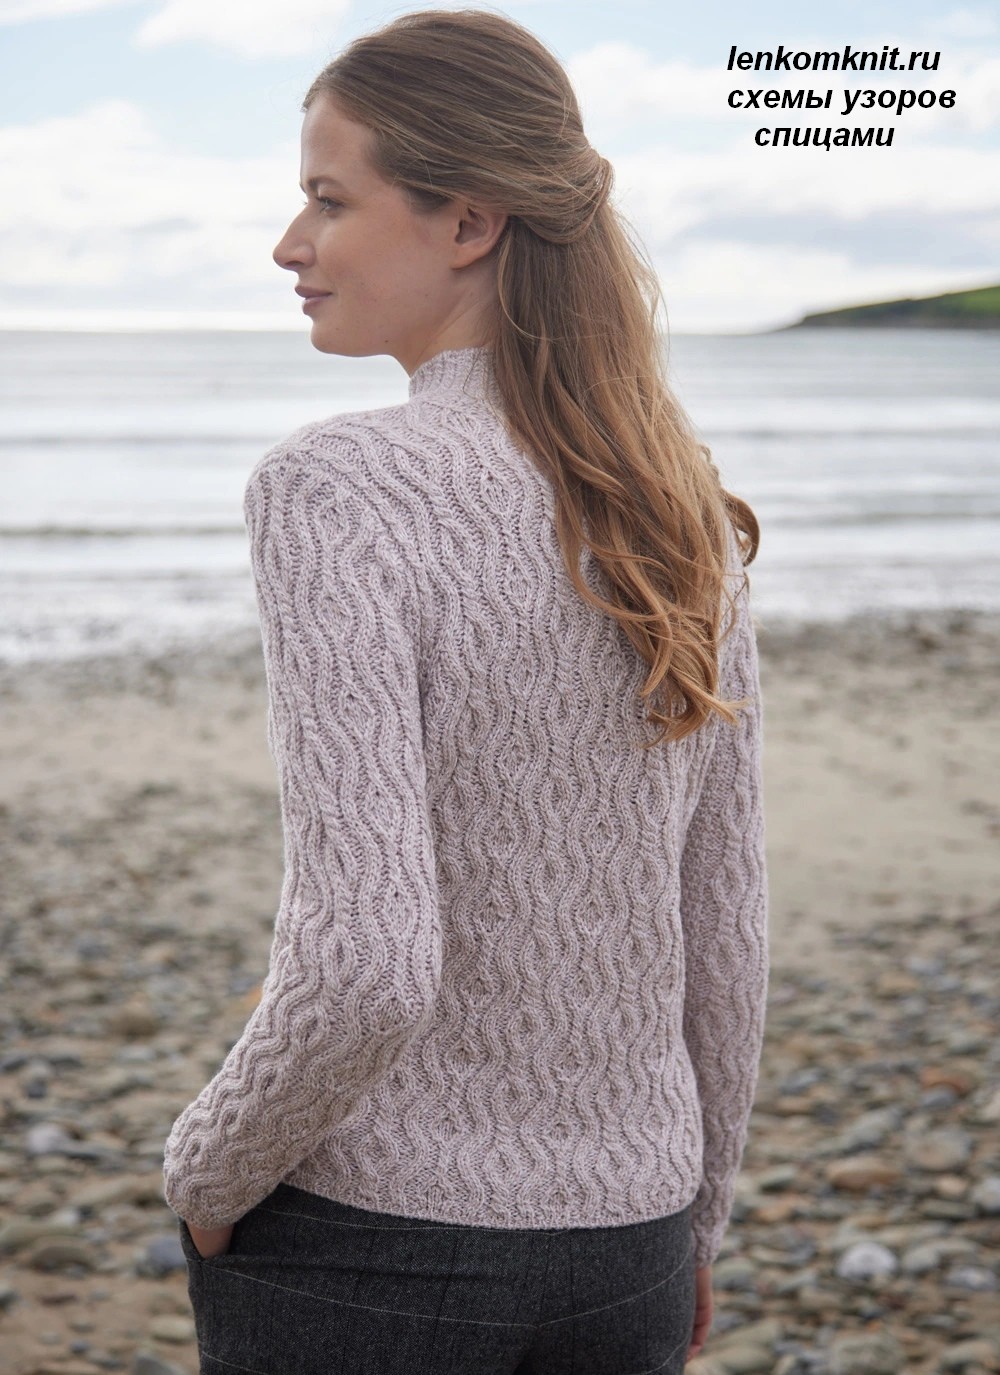 Арановый свитер Вlarney